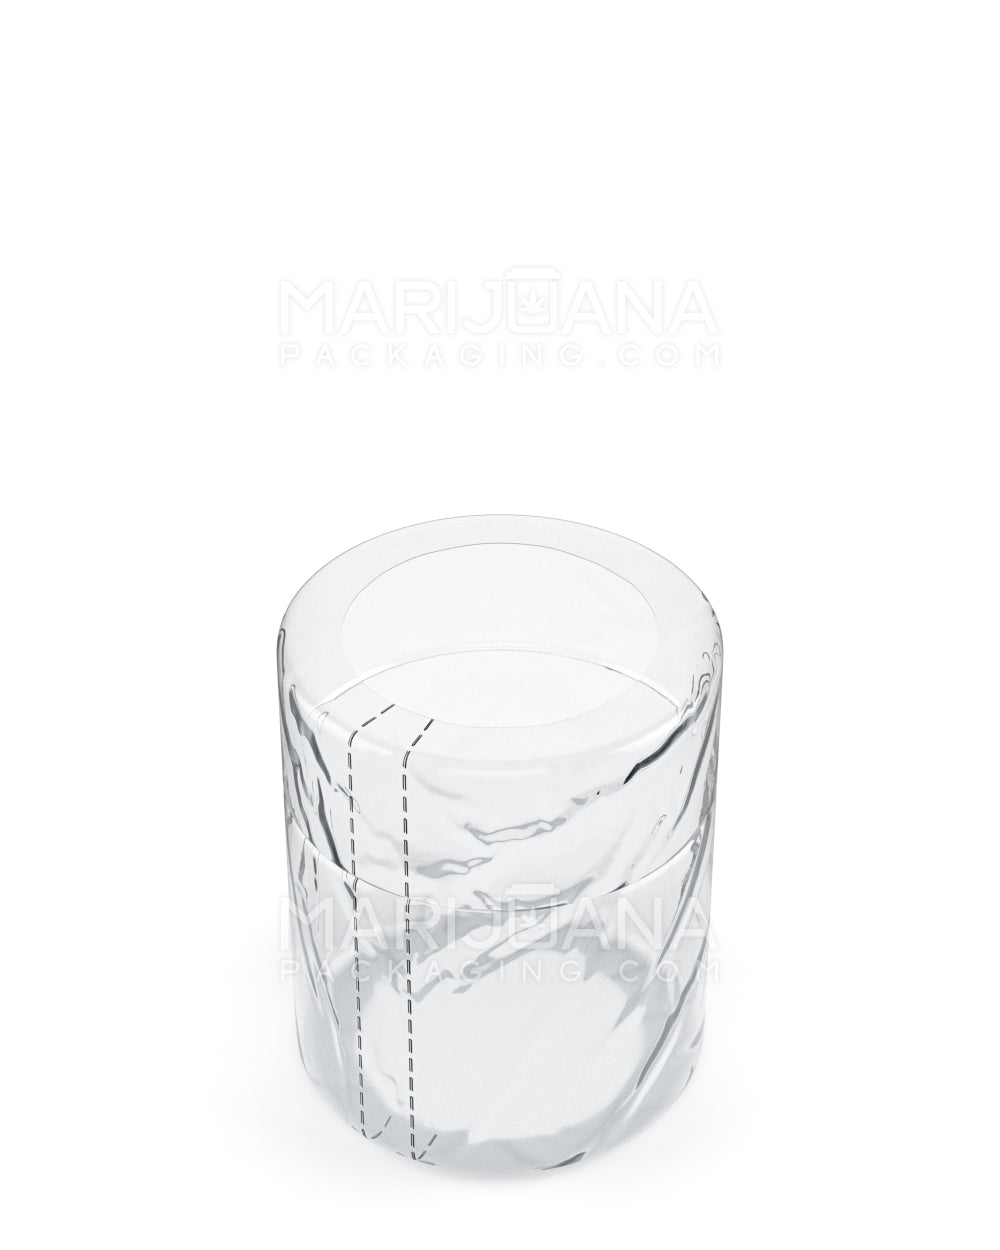 Tamper Evident | Heat Seal PVC Shrink Bands for Jars | 1oz - Clear Plastic - 1000 Count - 1